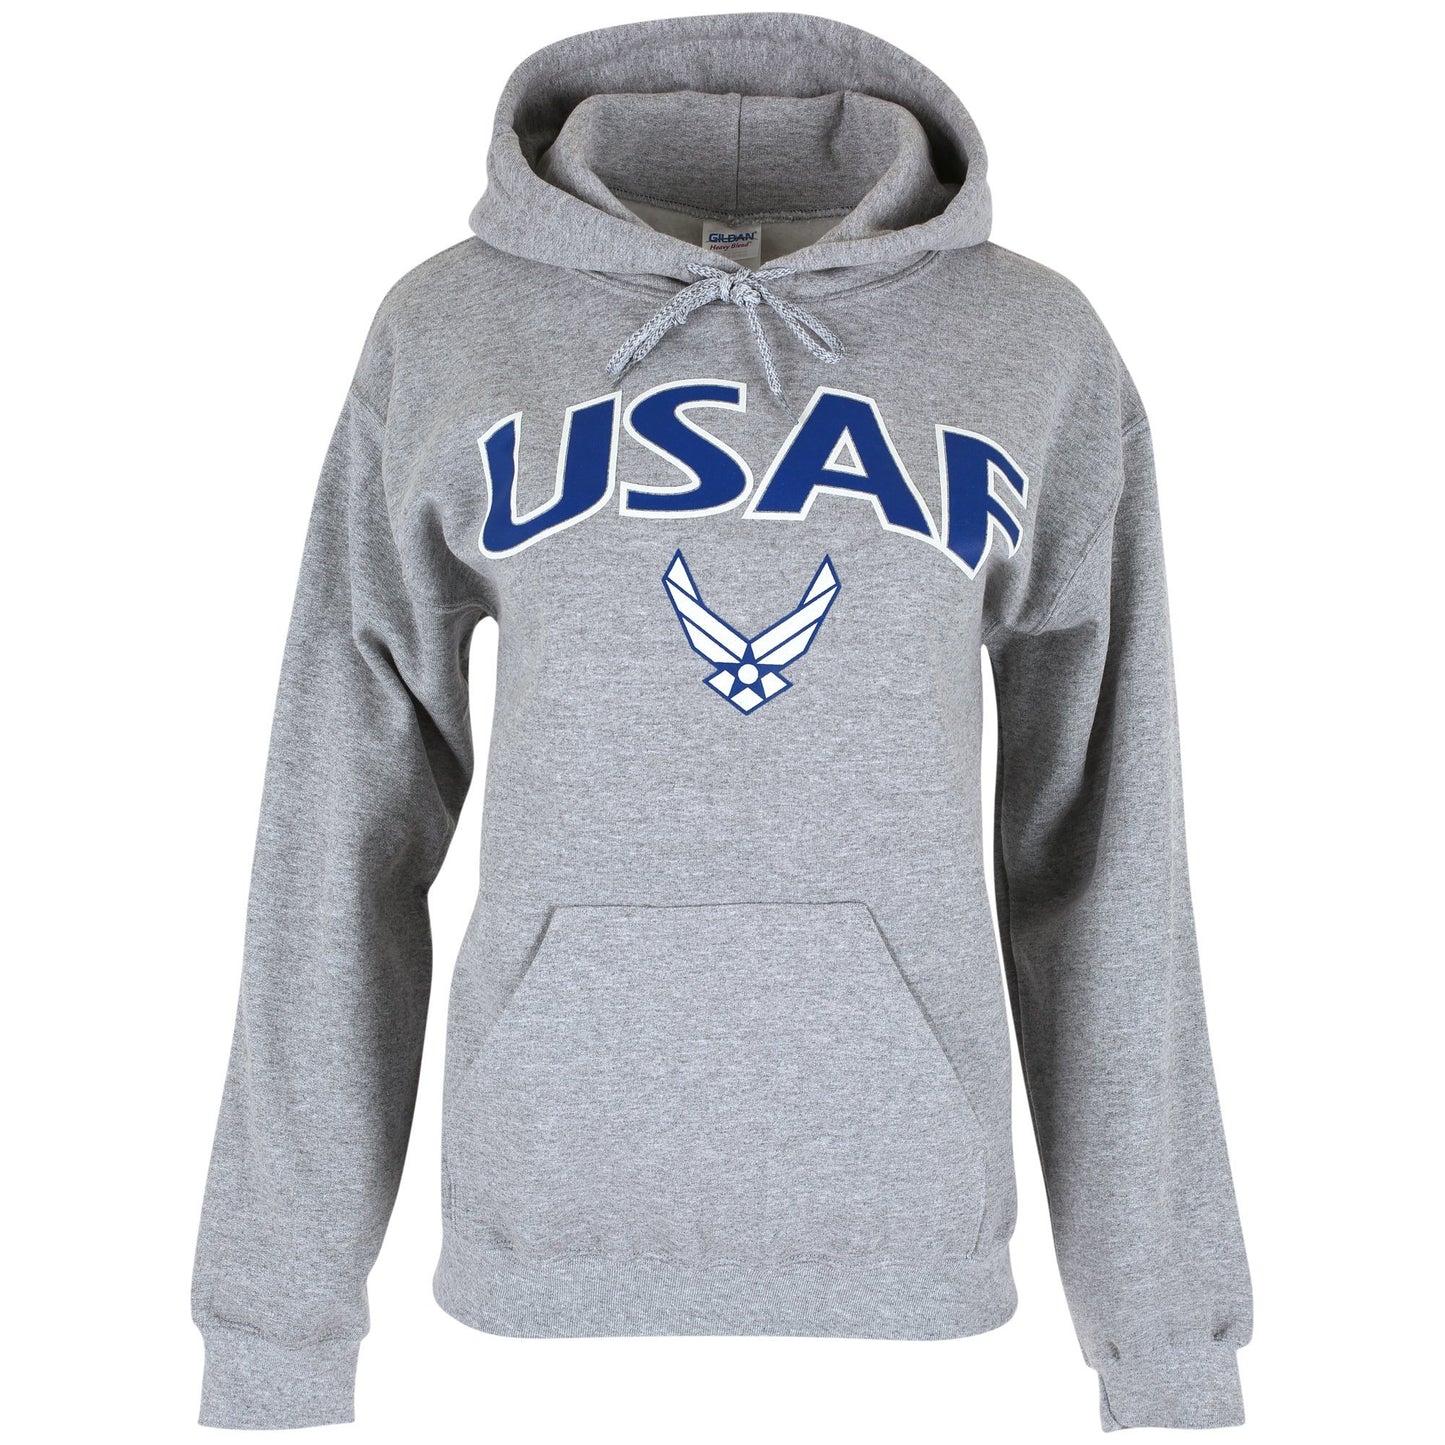 U.S. Air Force Hooded Sweatshirt